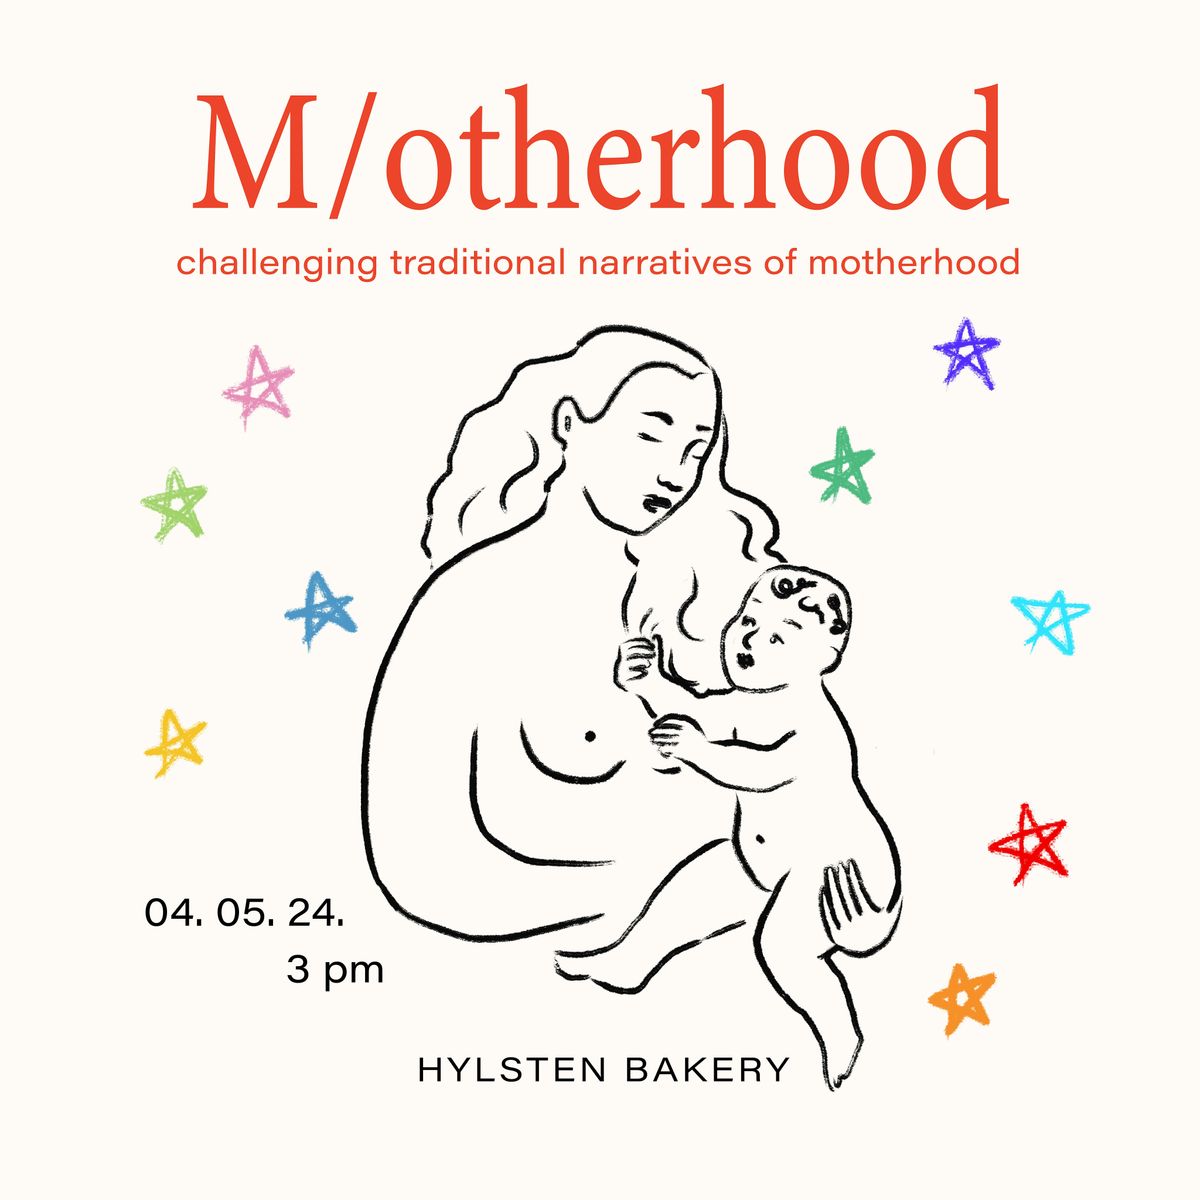 M\/otherhood X Hylsten Bakery Photography exhibition